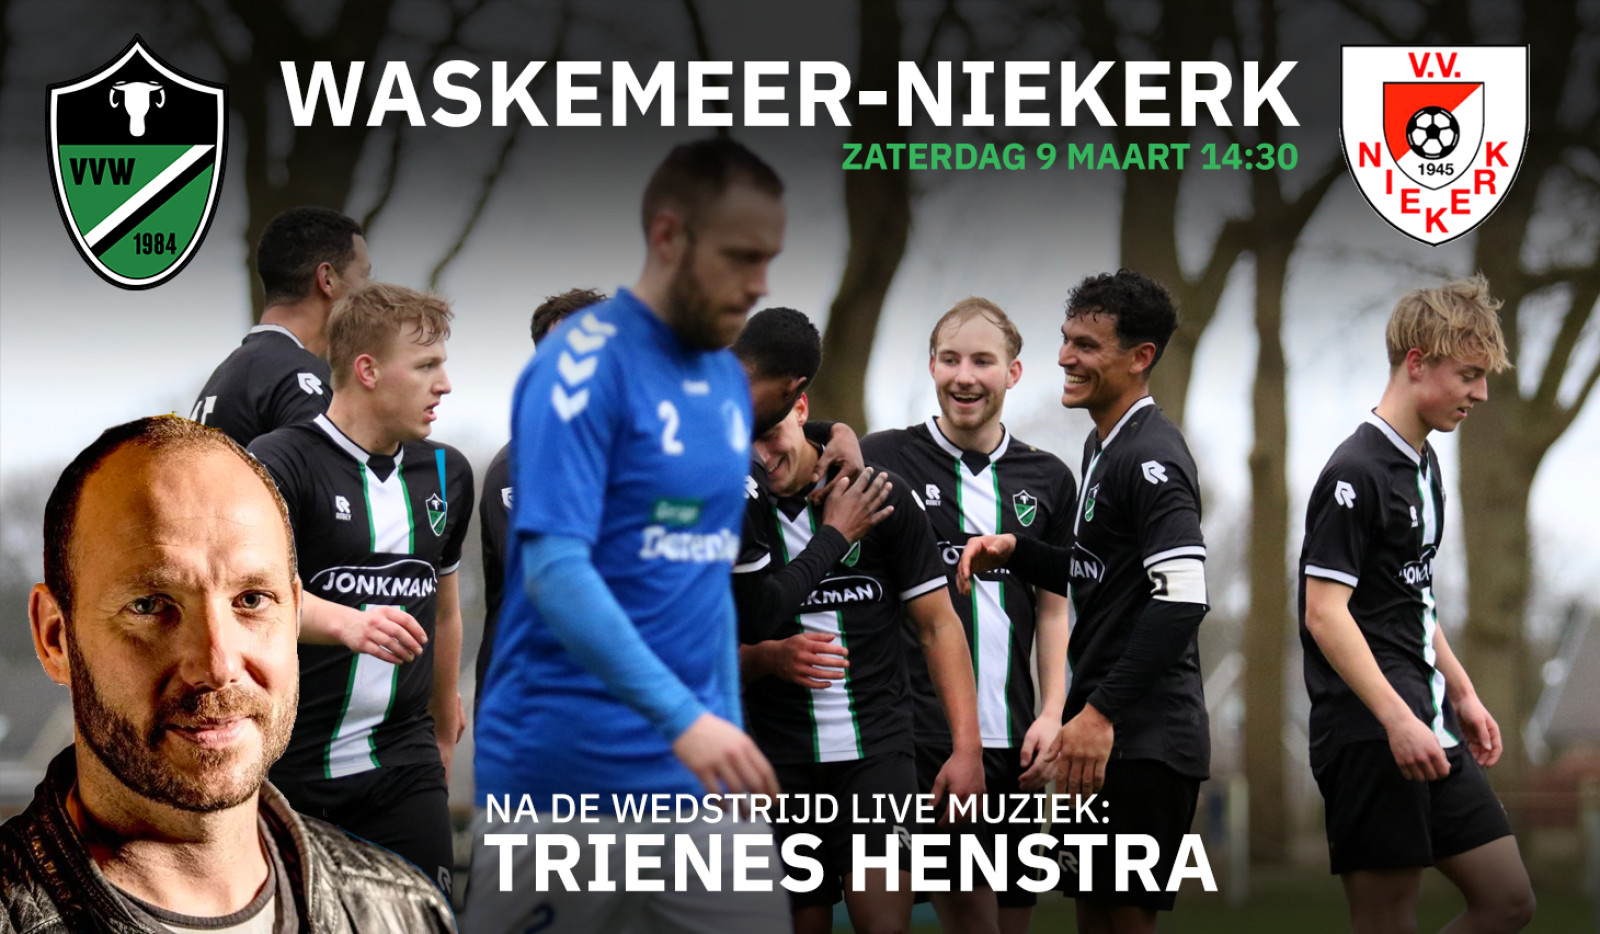 Waskemeer - Niekerk met live muziek van Trienes Henstra